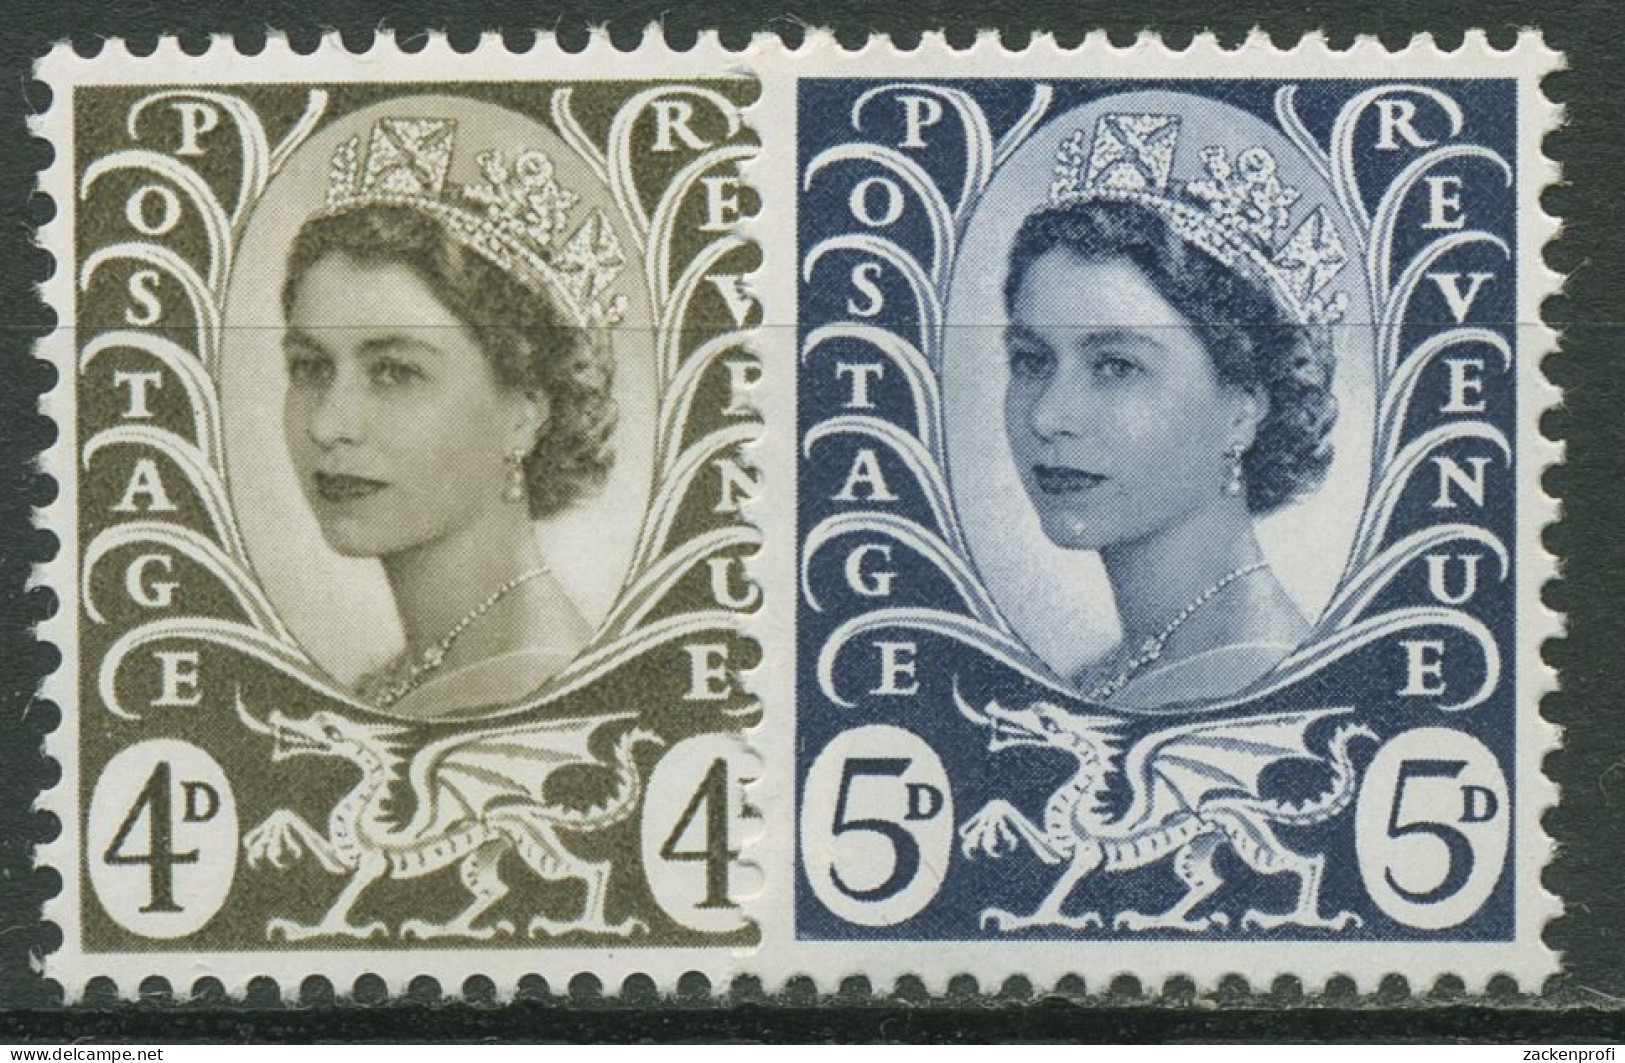 Großbritannien-Wales 1968 Königin Elisabeth II. 9/10 Postfrisch - Pays De Galles